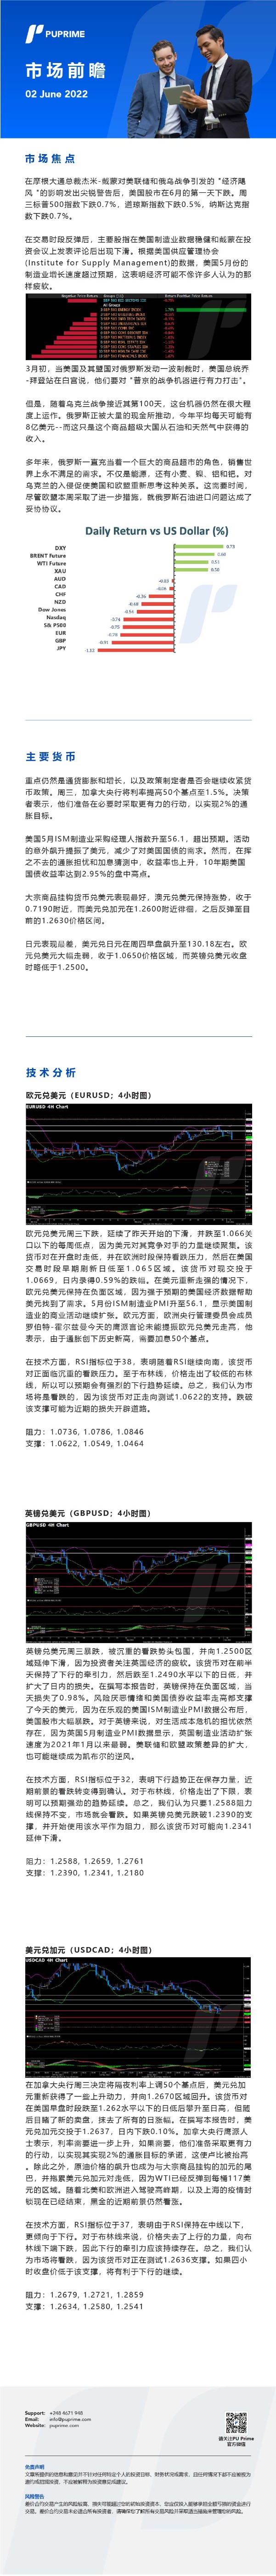 02062022 Daily Market Analysis__CHN.jpg